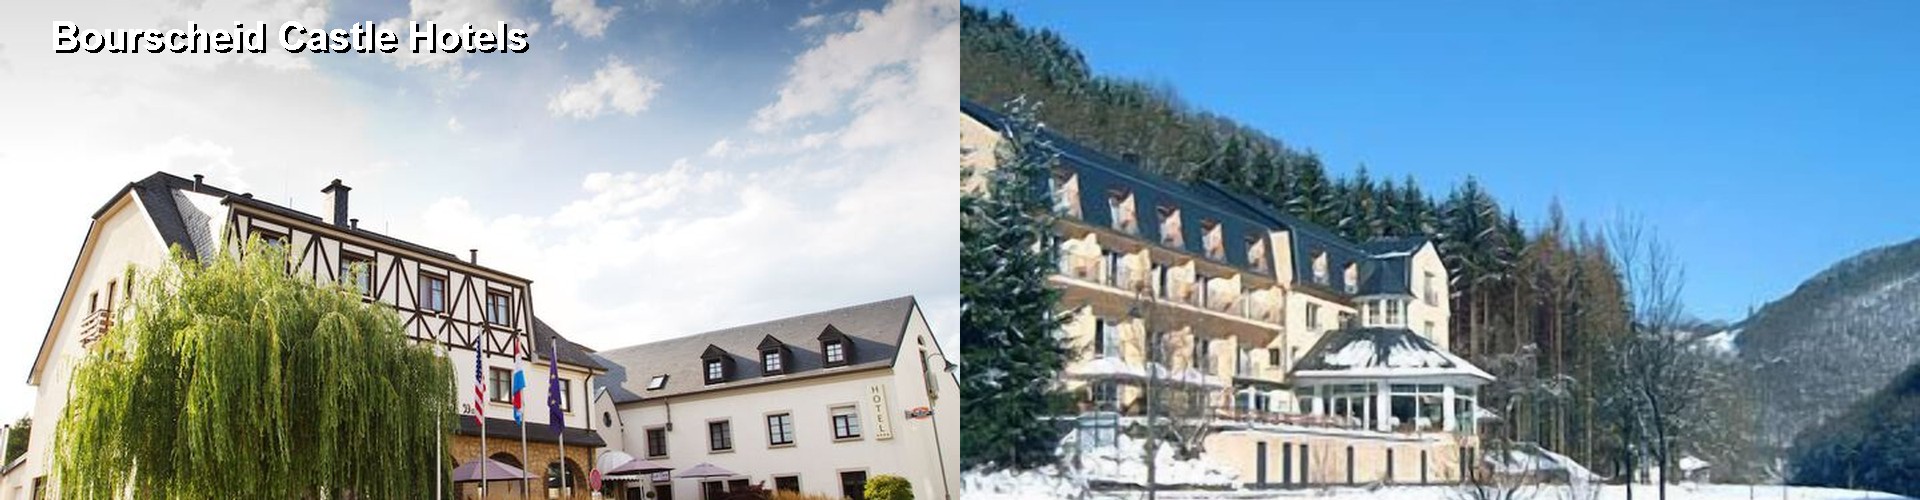 5 Best Hotels near Bourscheid Castle